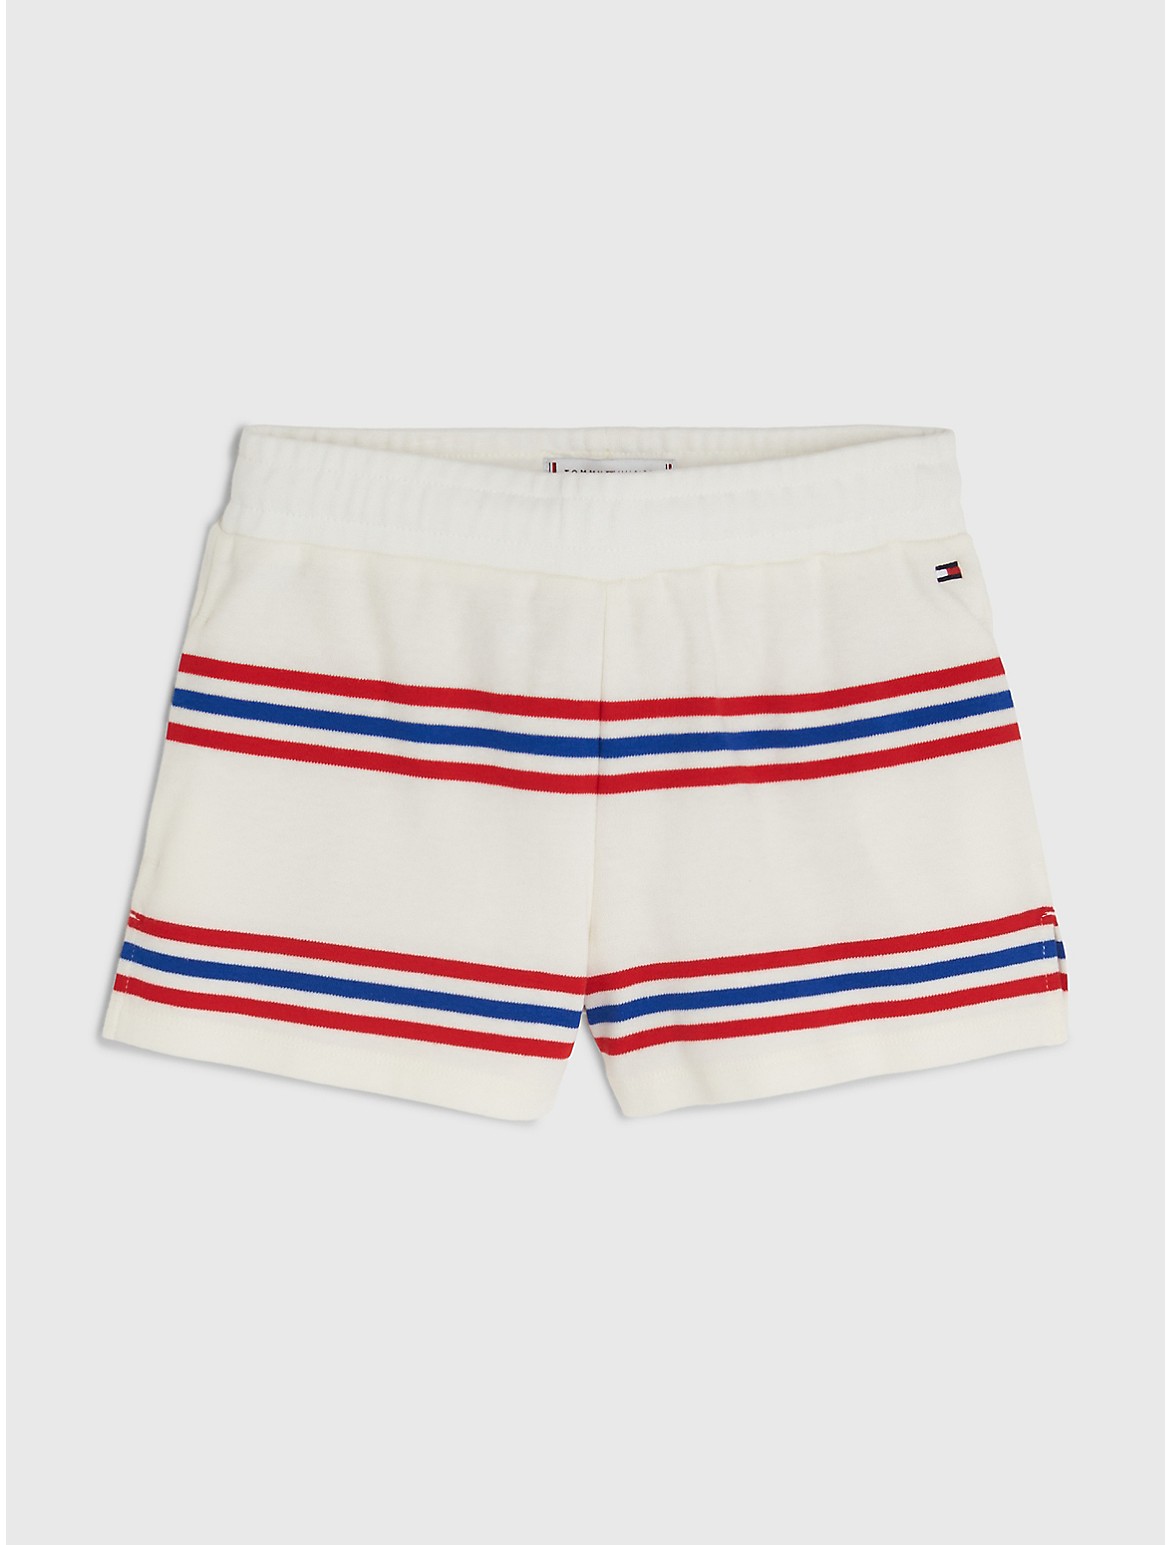 Tommy Hilfiger Girls' Kids' Varsity Stripe Short - White - 7